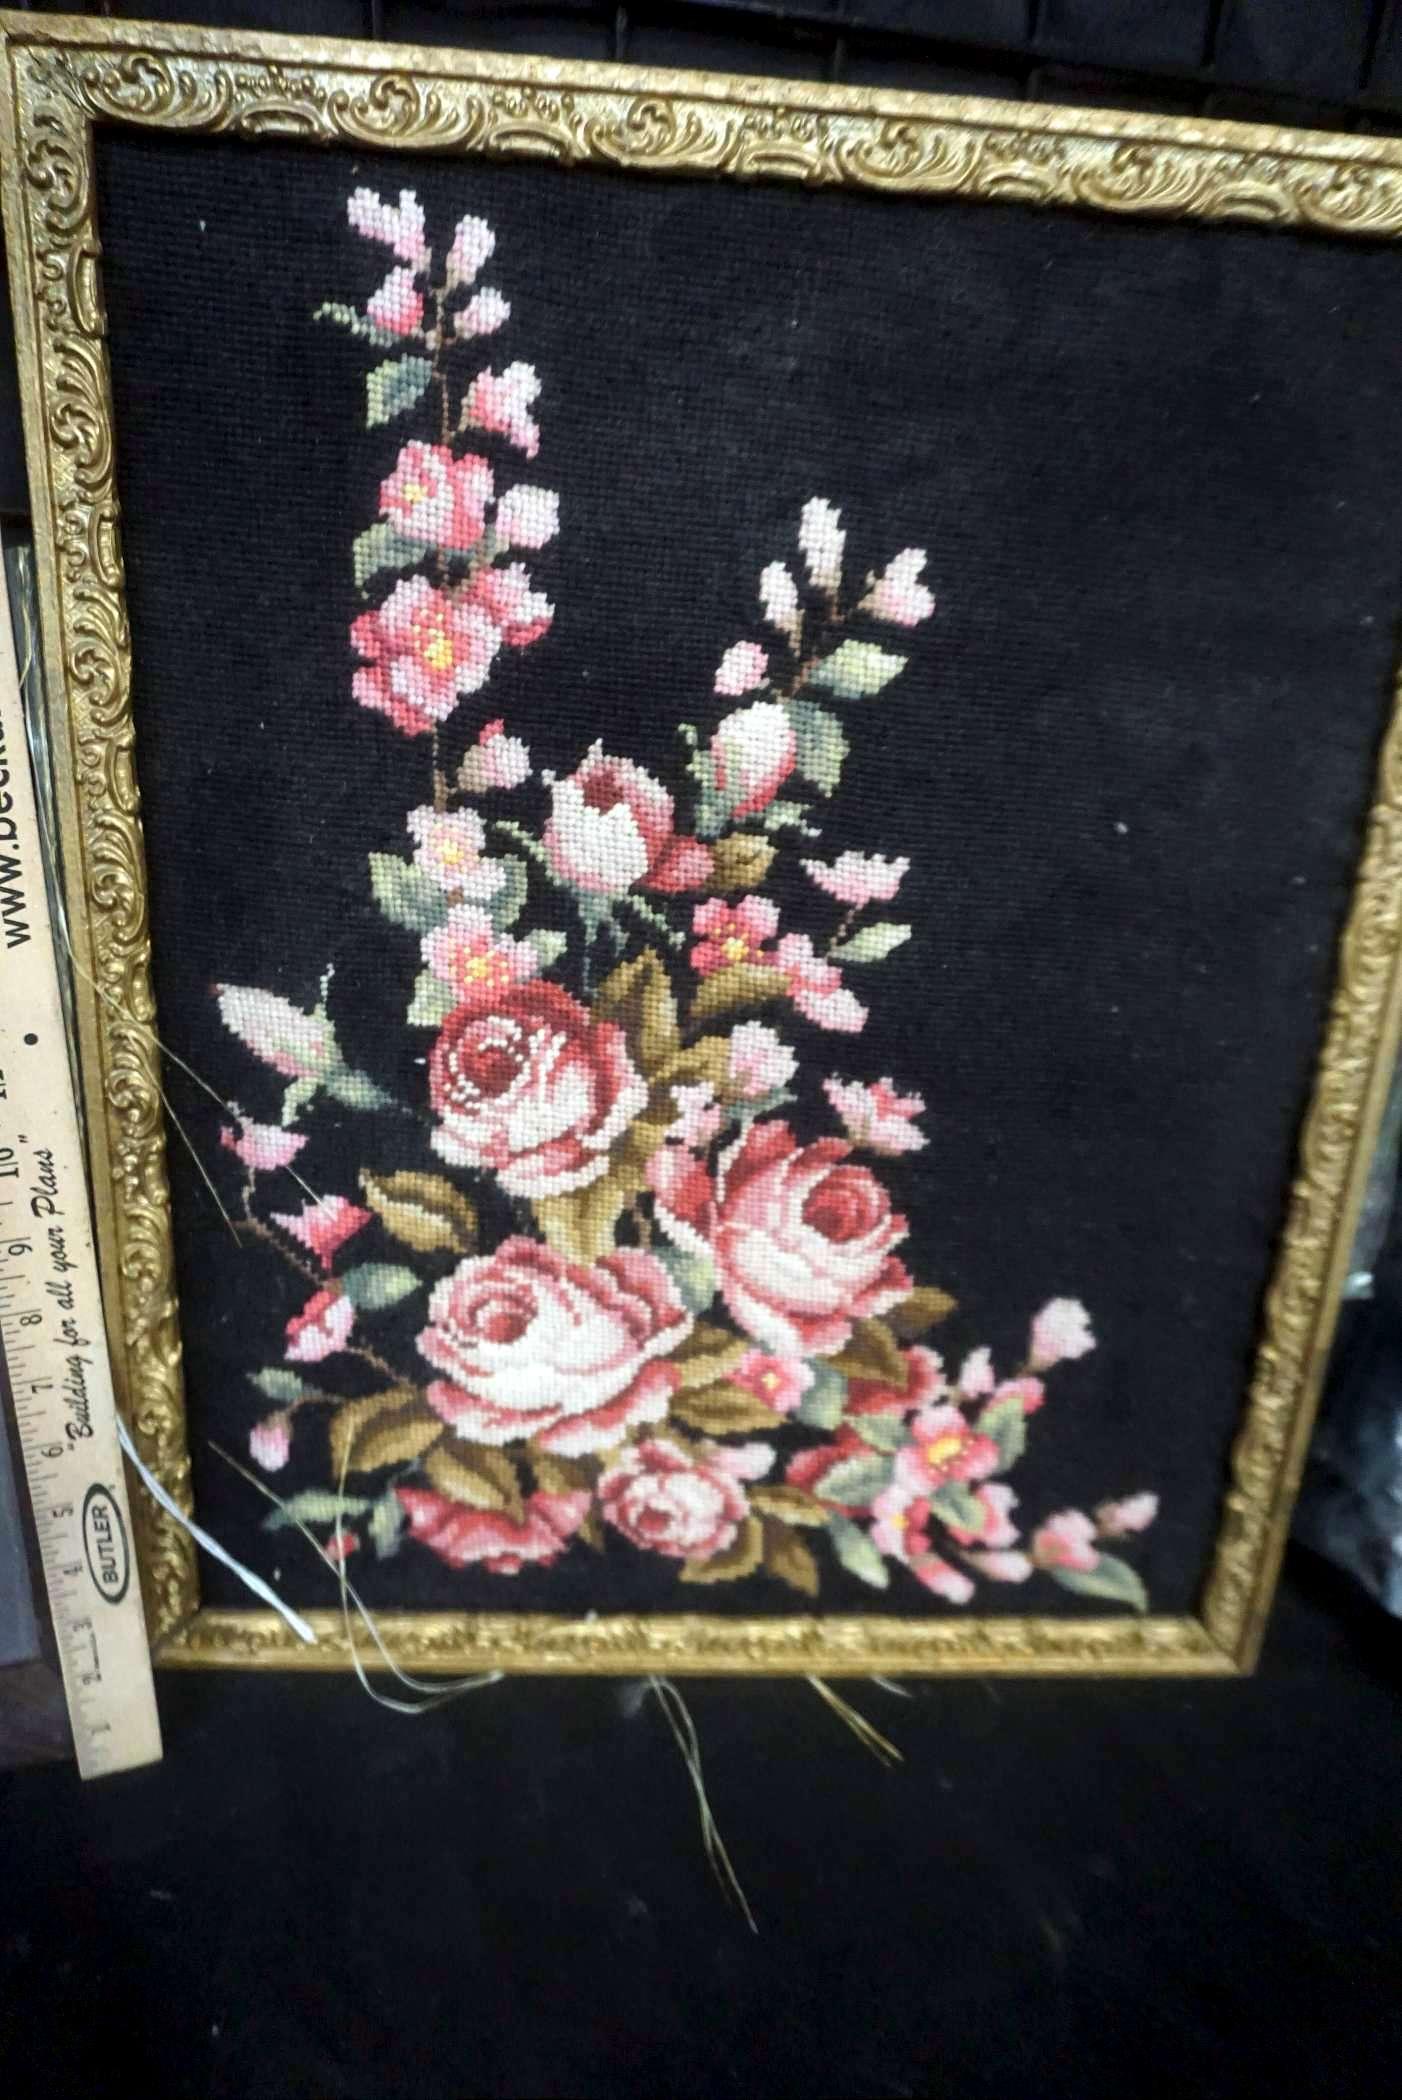 Family Photo & Needlework Flower Framed Art